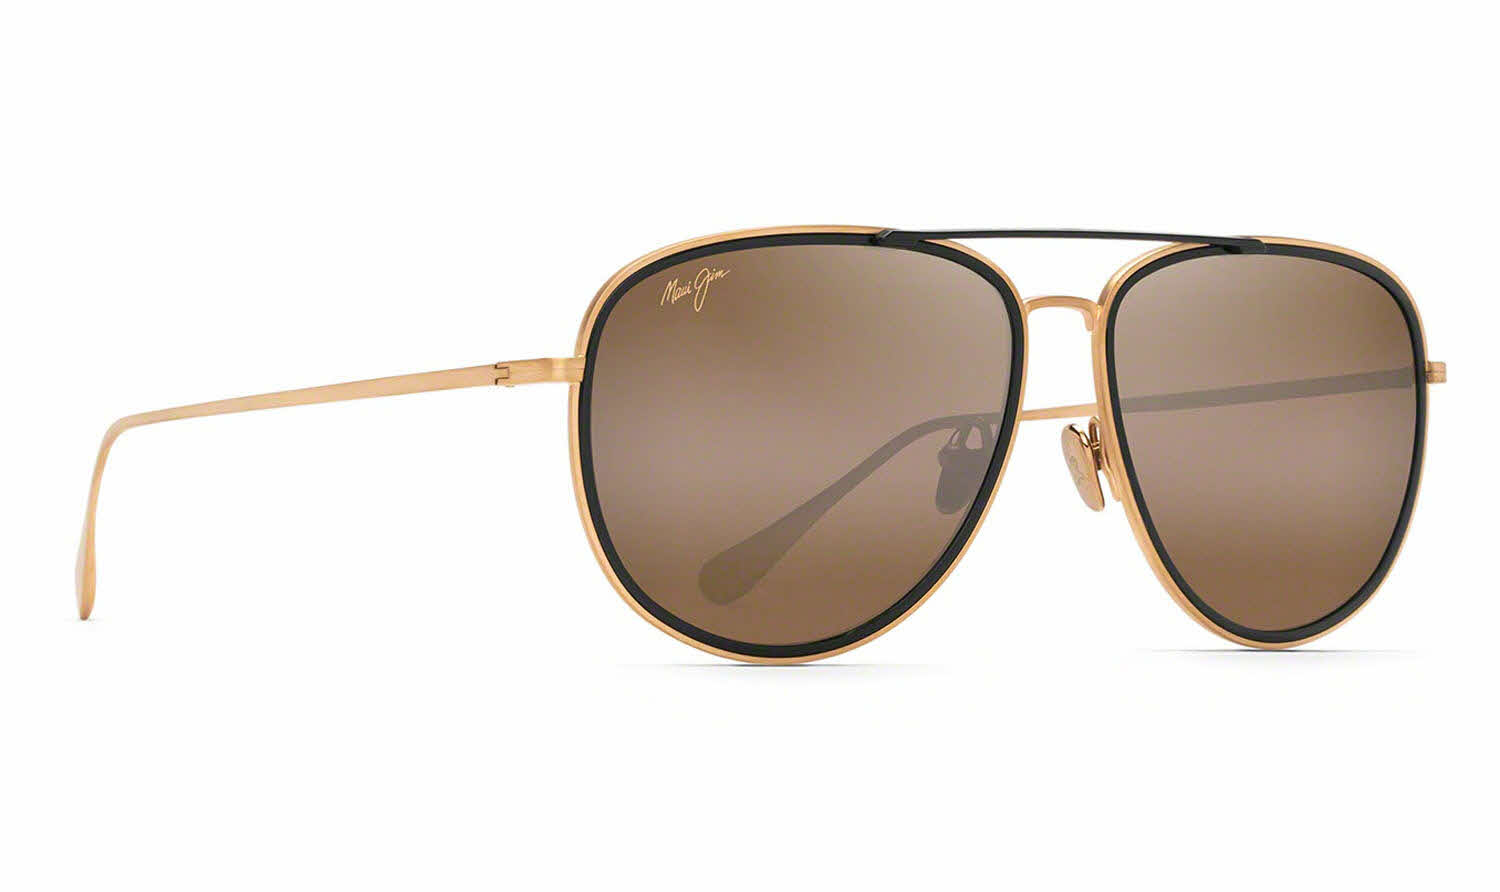 Maui Jim Fair Winds-554 Sunglasses